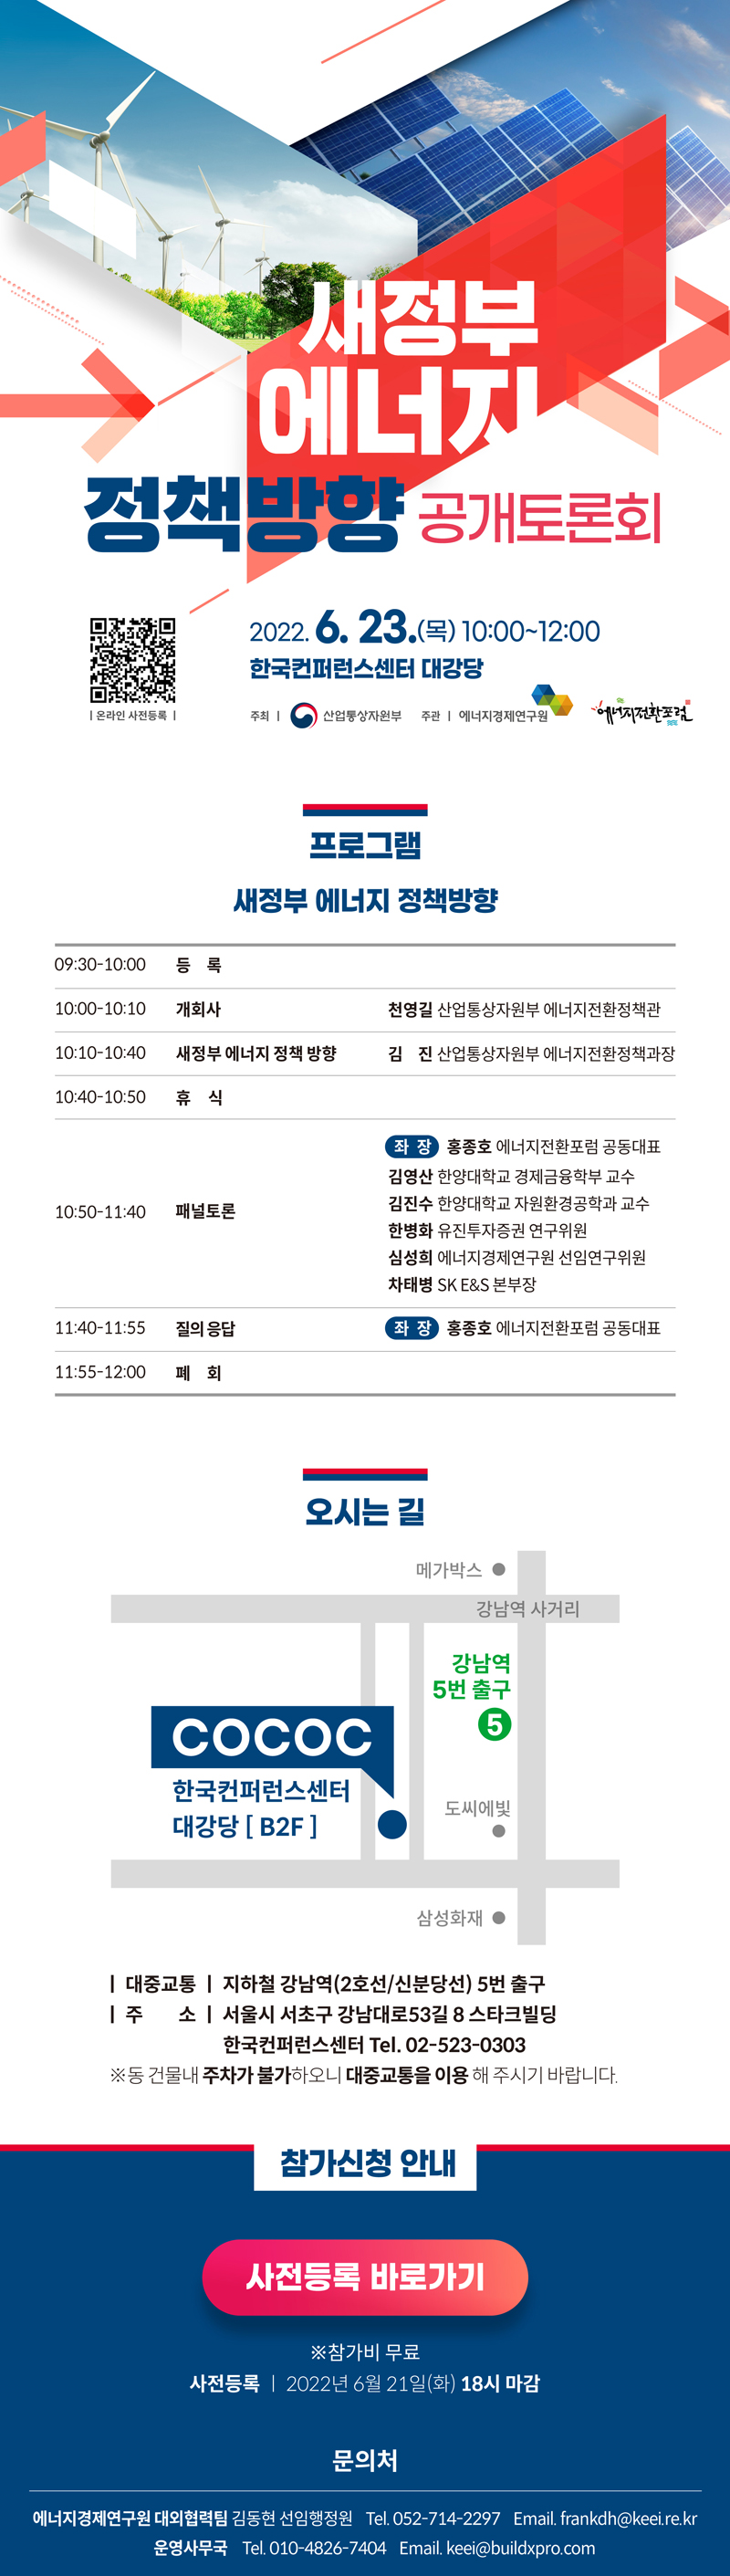 새정부 에너지 정책방향 공개토론회 개최(6.23.(목), 10:00 ~ 12:00, 한국컨퍼런스센터 대강당) 이미지